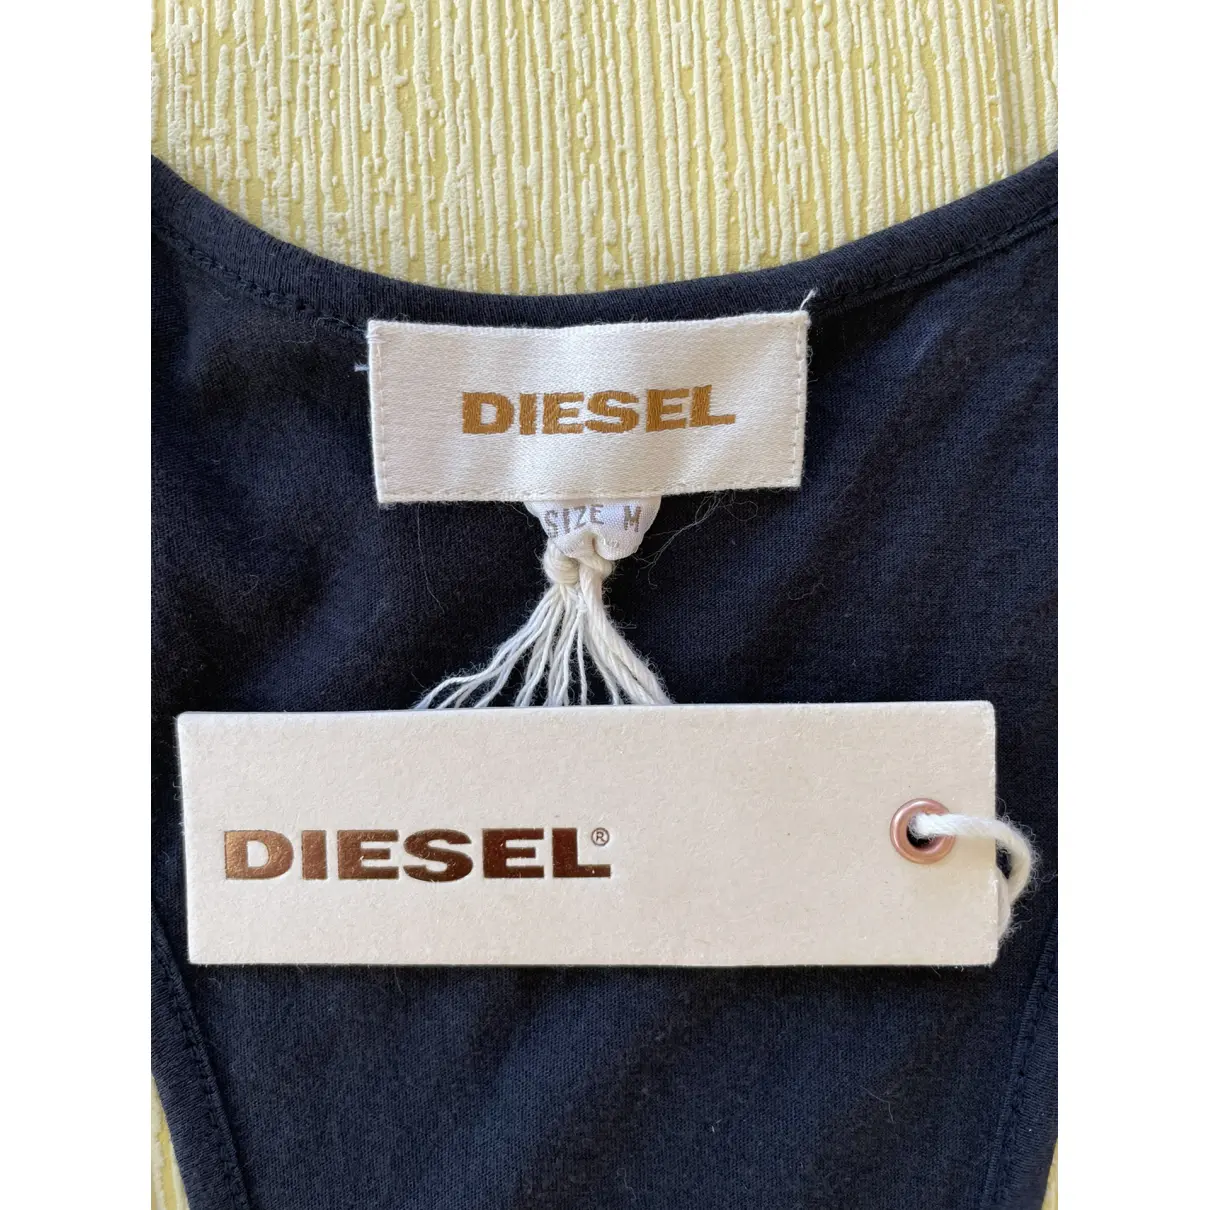 Buy Diesel Mid-length dress online